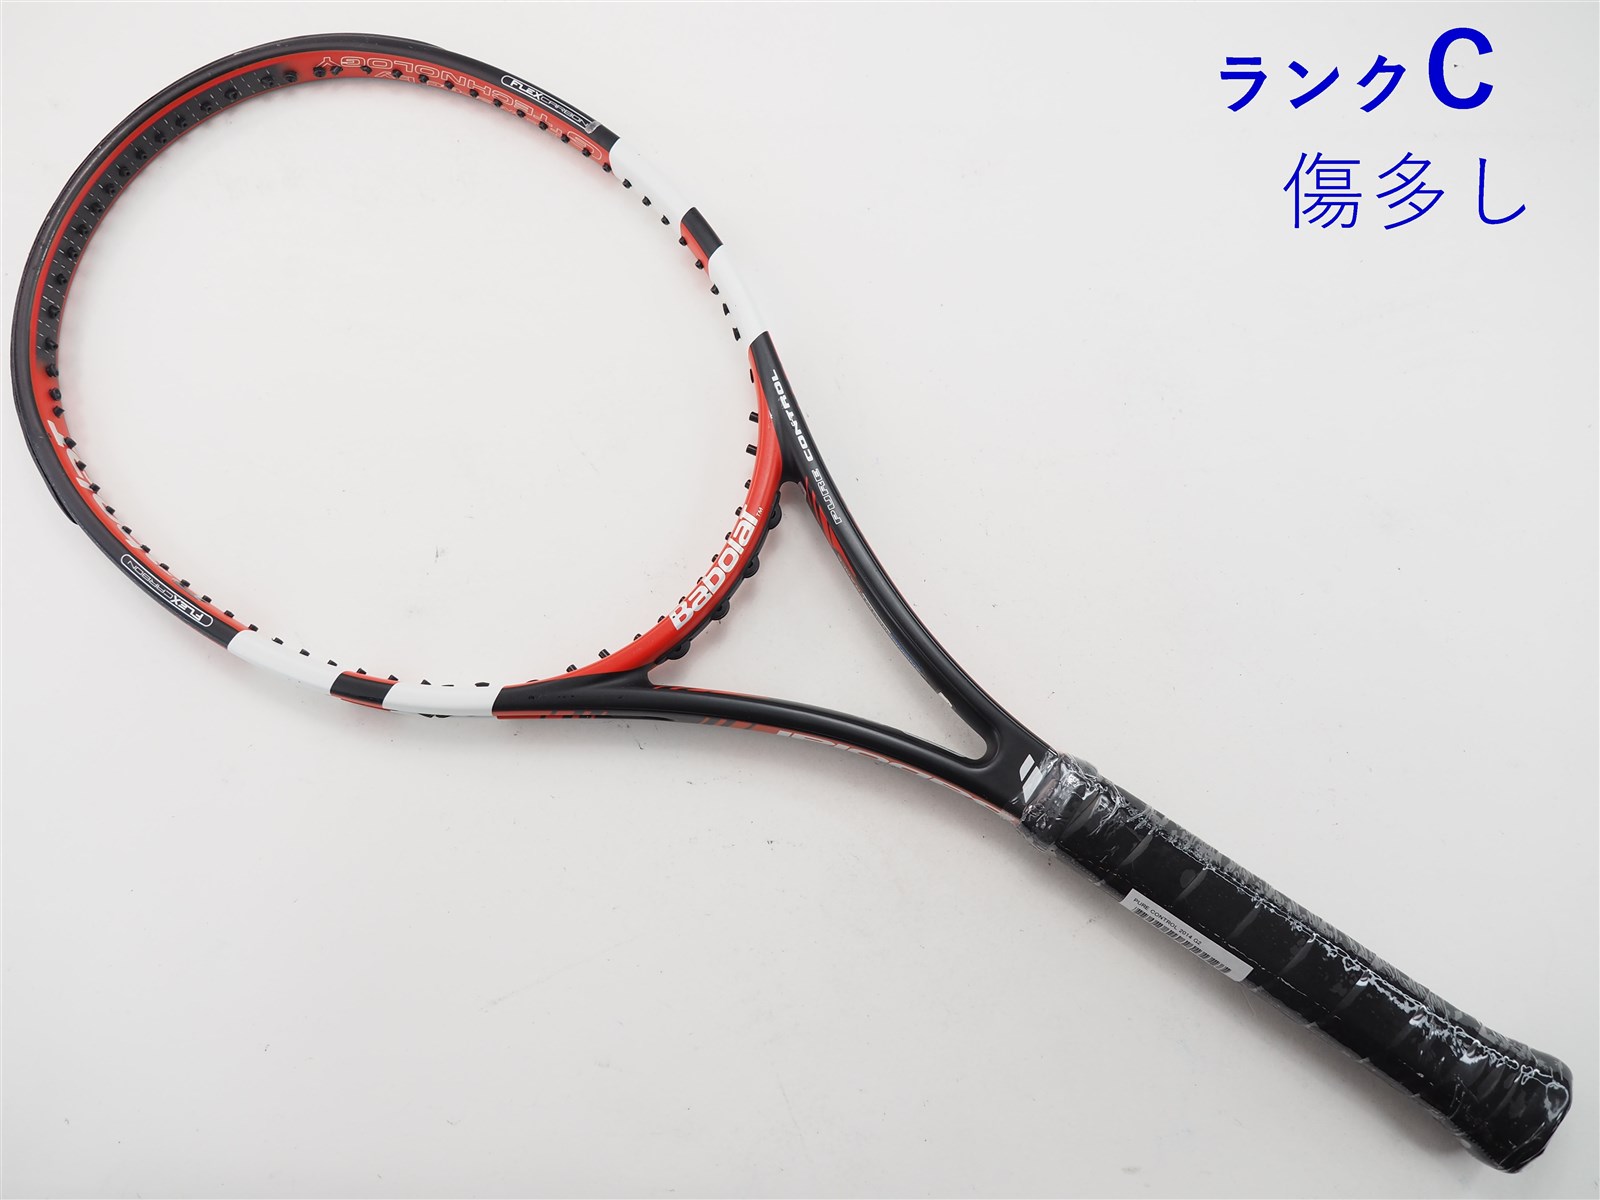 270インチフレーム厚テニスラケット バボラ ピュア コントロール ツアー 2014年モデル (G2)BABOLAT PURE CONTROL TOUR 2014